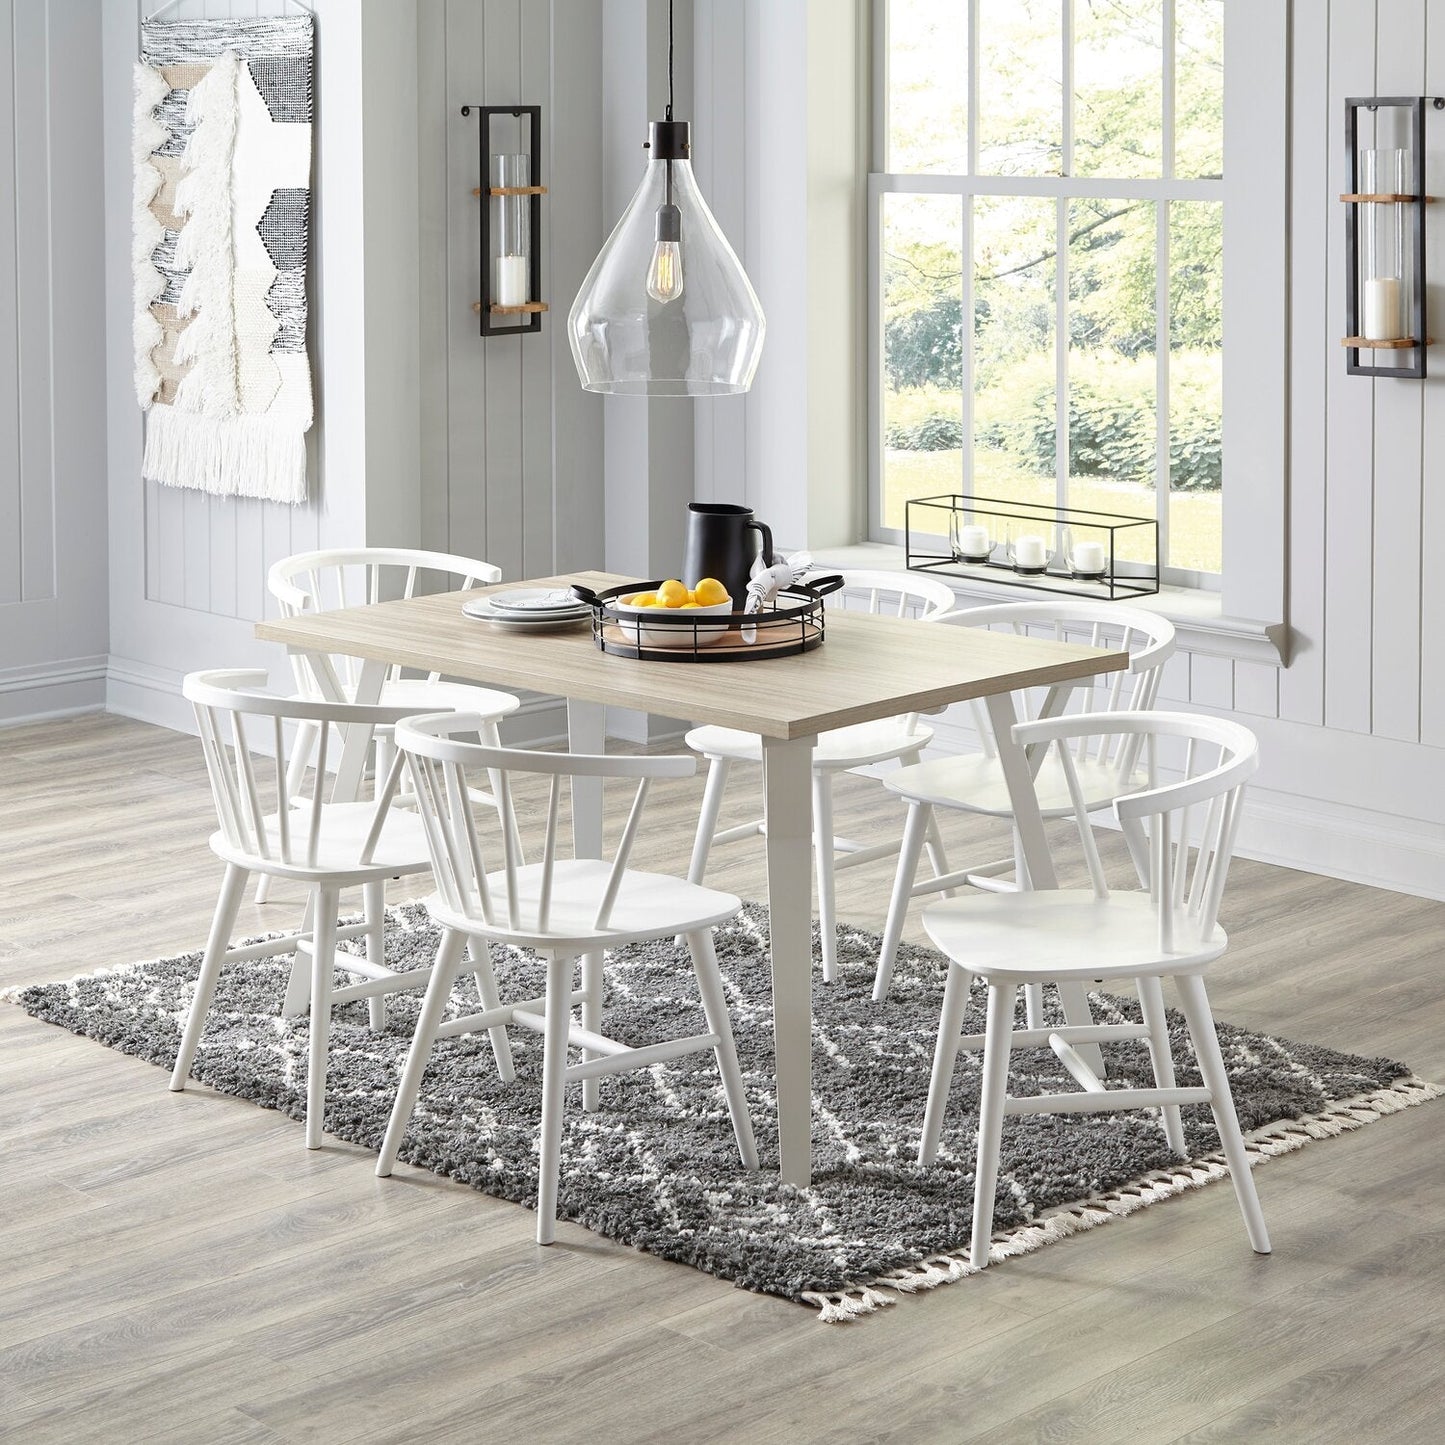 Telos Dining Chair - White